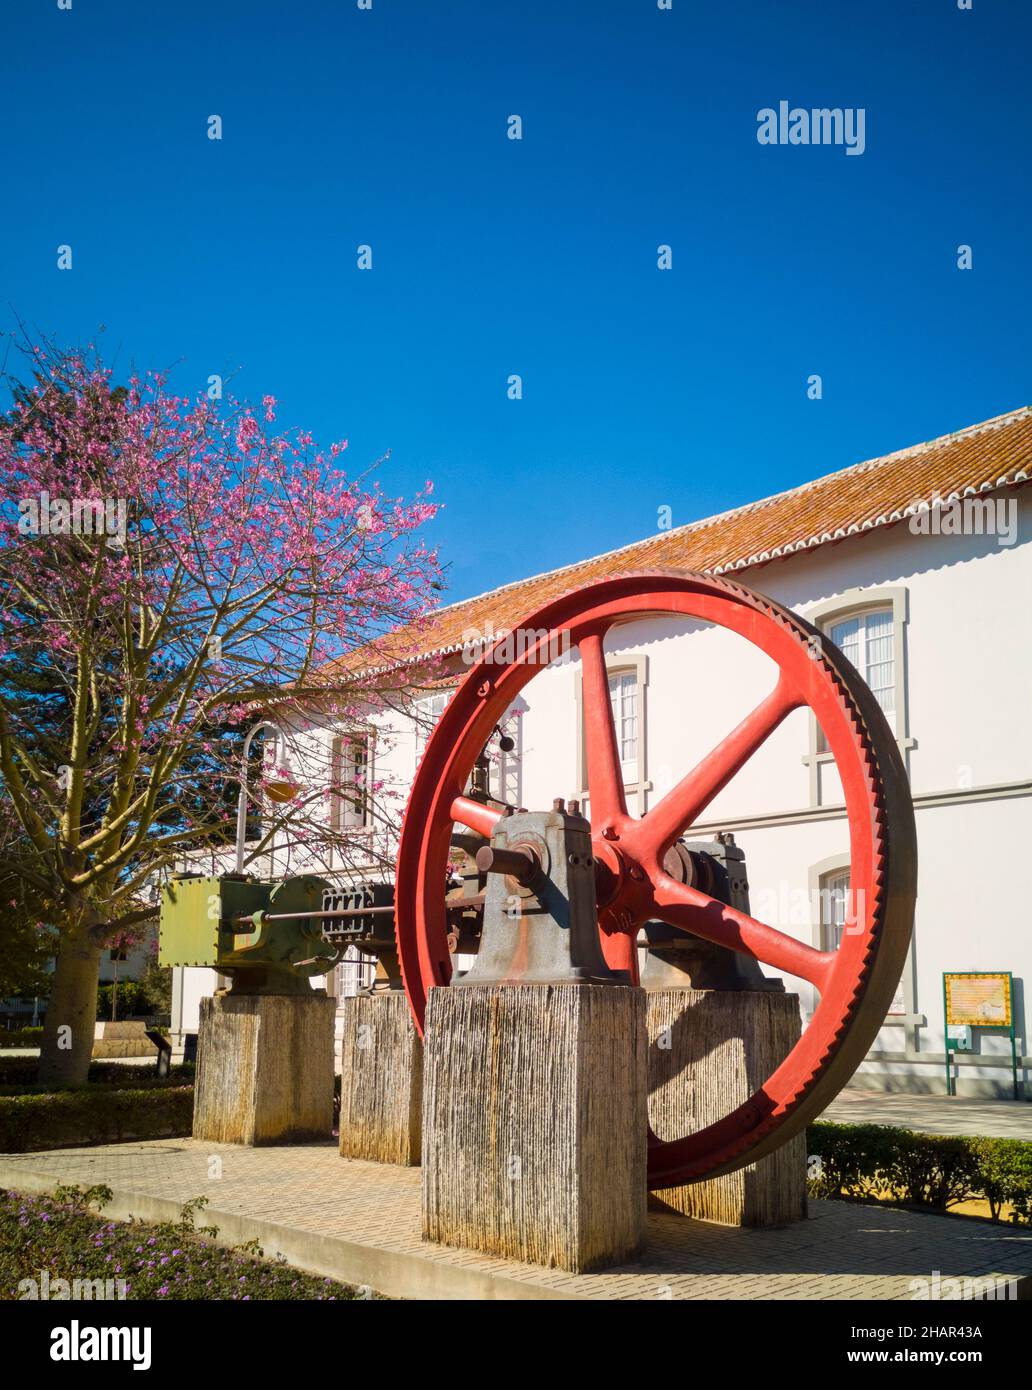 Partie du moteur à vapeur utilisée pour le broyage de la canne à sucre en dehors de la Casa Larios, Torre Del mar, province de Malaga, Andalousie, Espagne Banque D'Images